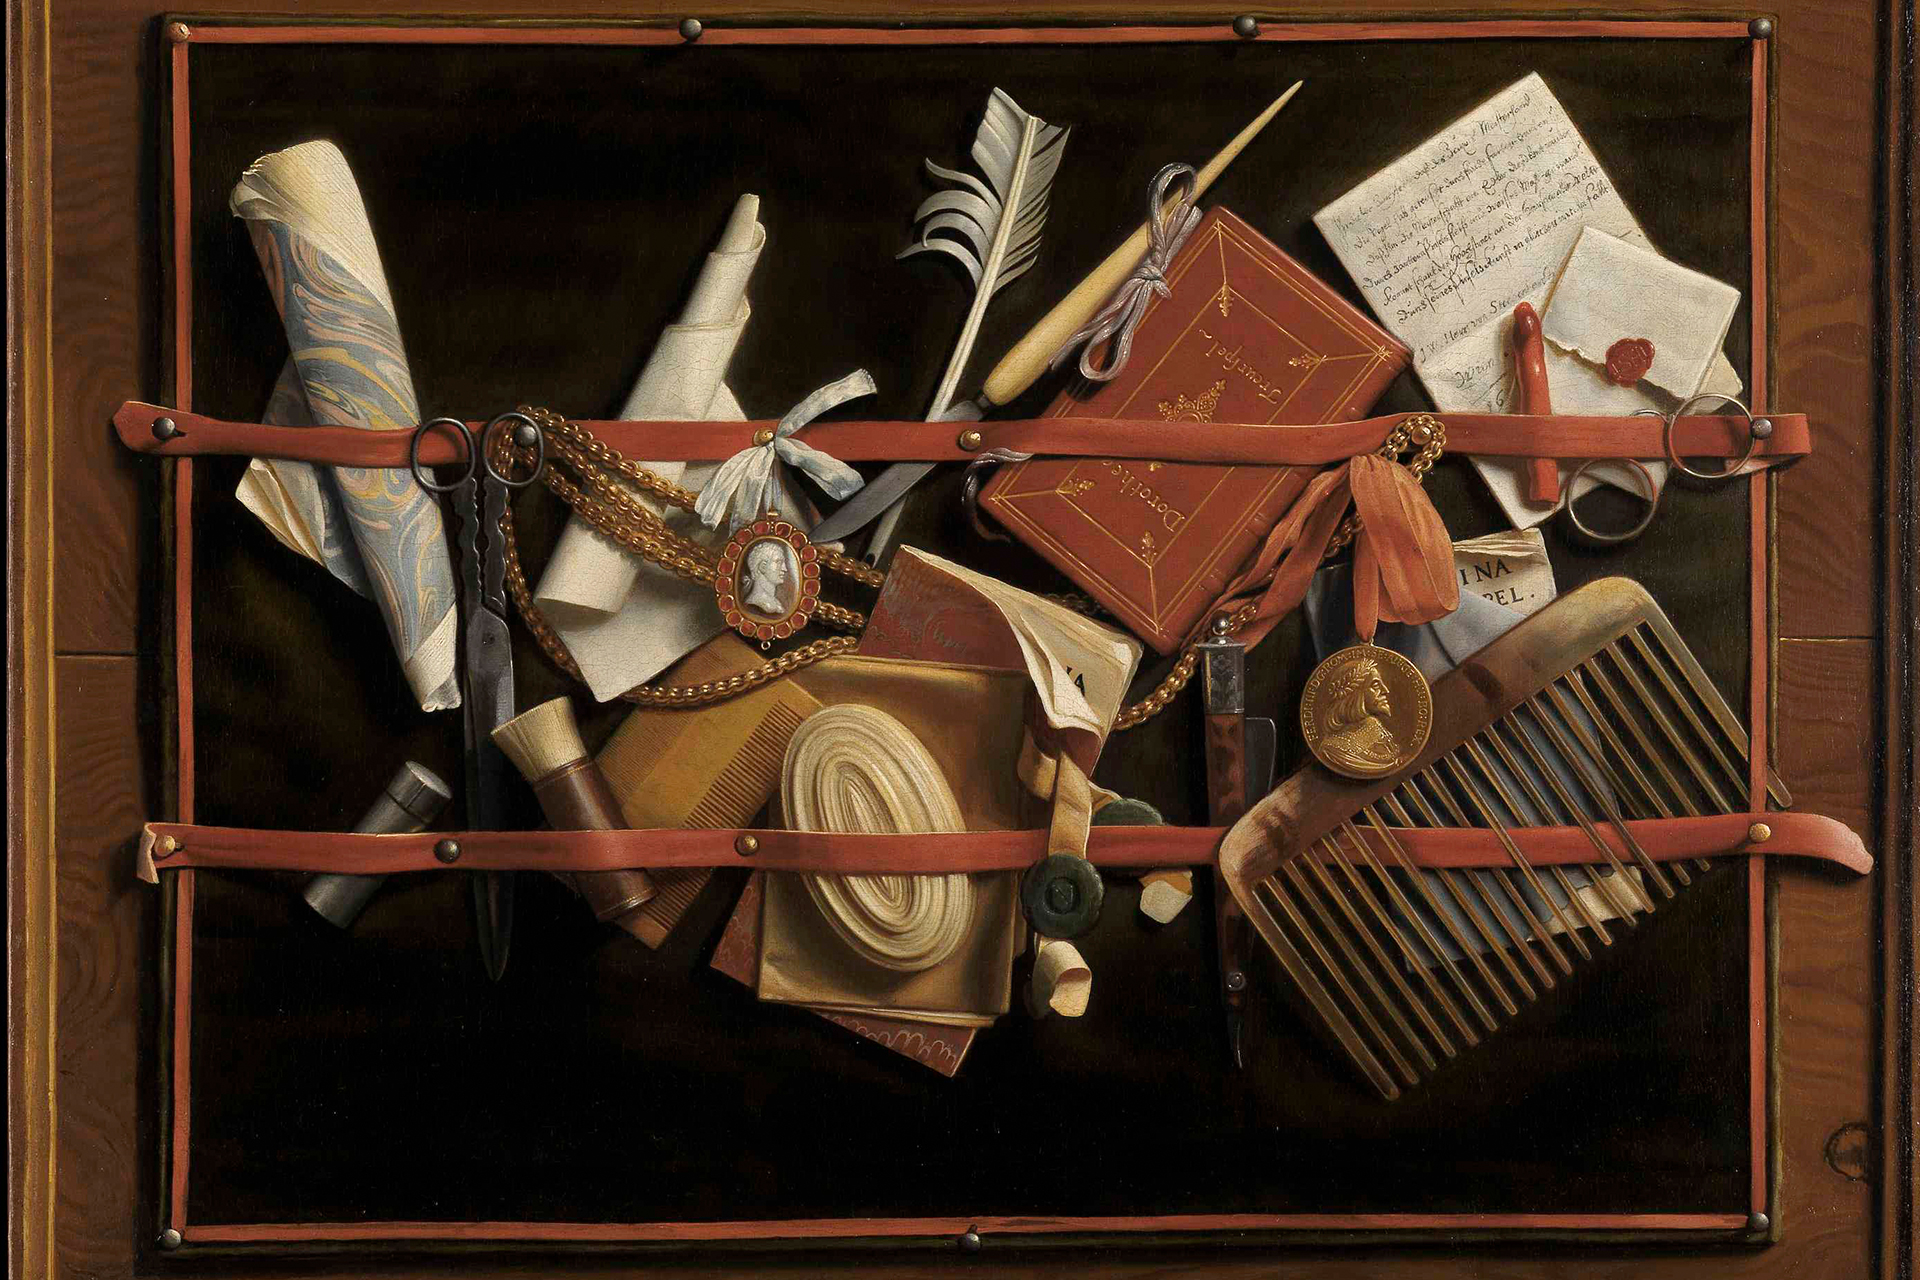 Ausschnitt des Augenbetrüger-Stilllebens von Samuel van Hoogstraten mit vielerlei persönlicher Gegenstände.